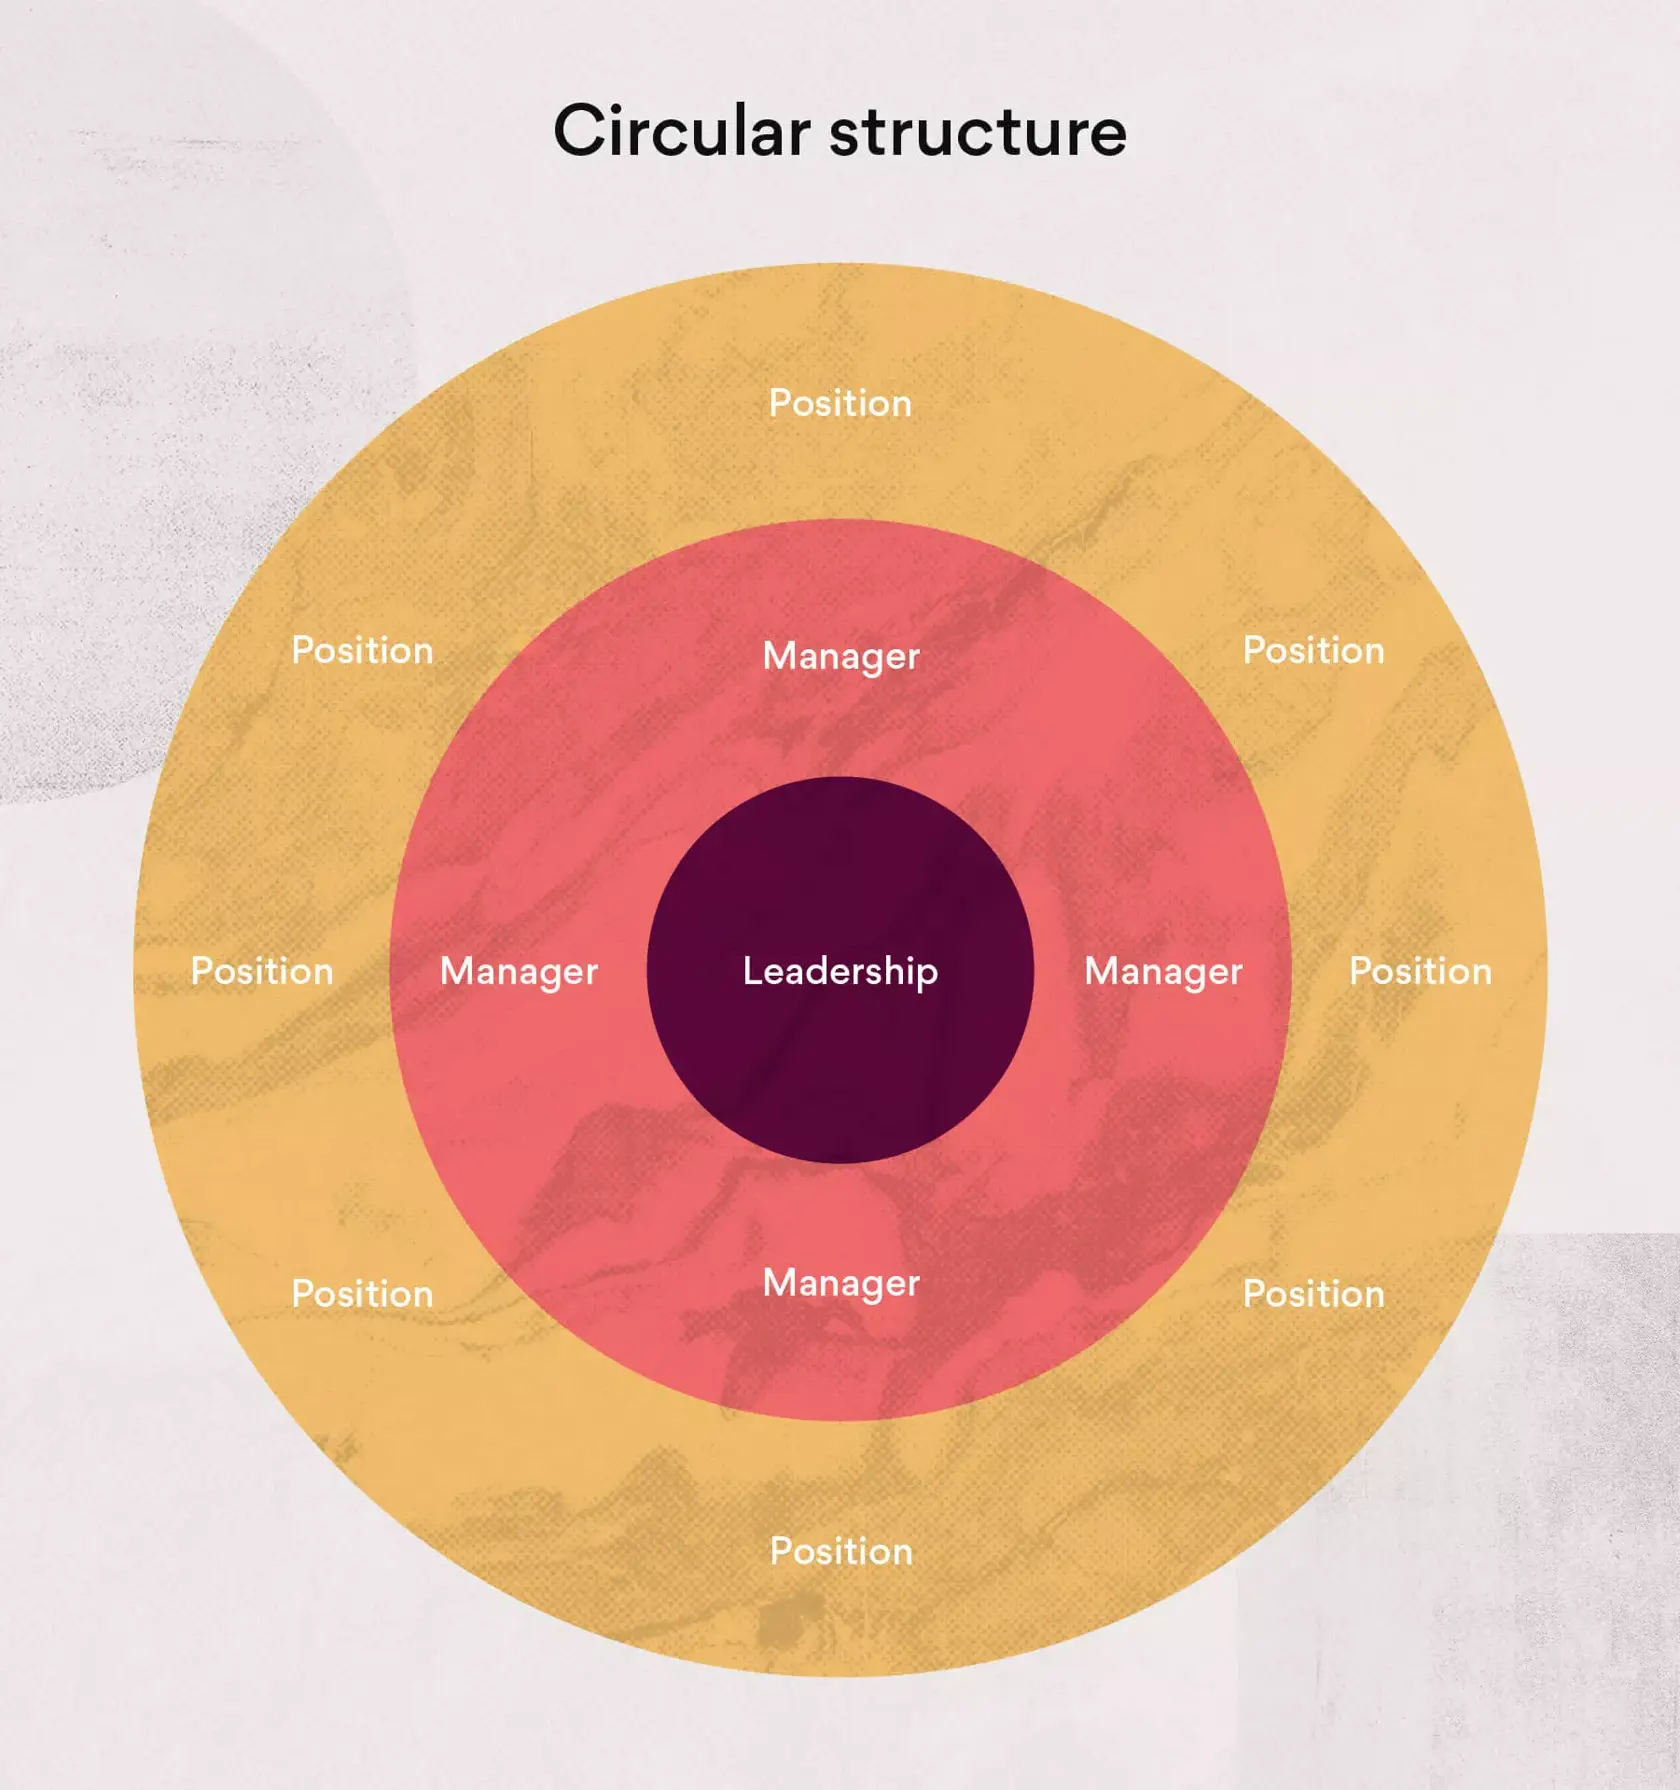 Circular structure